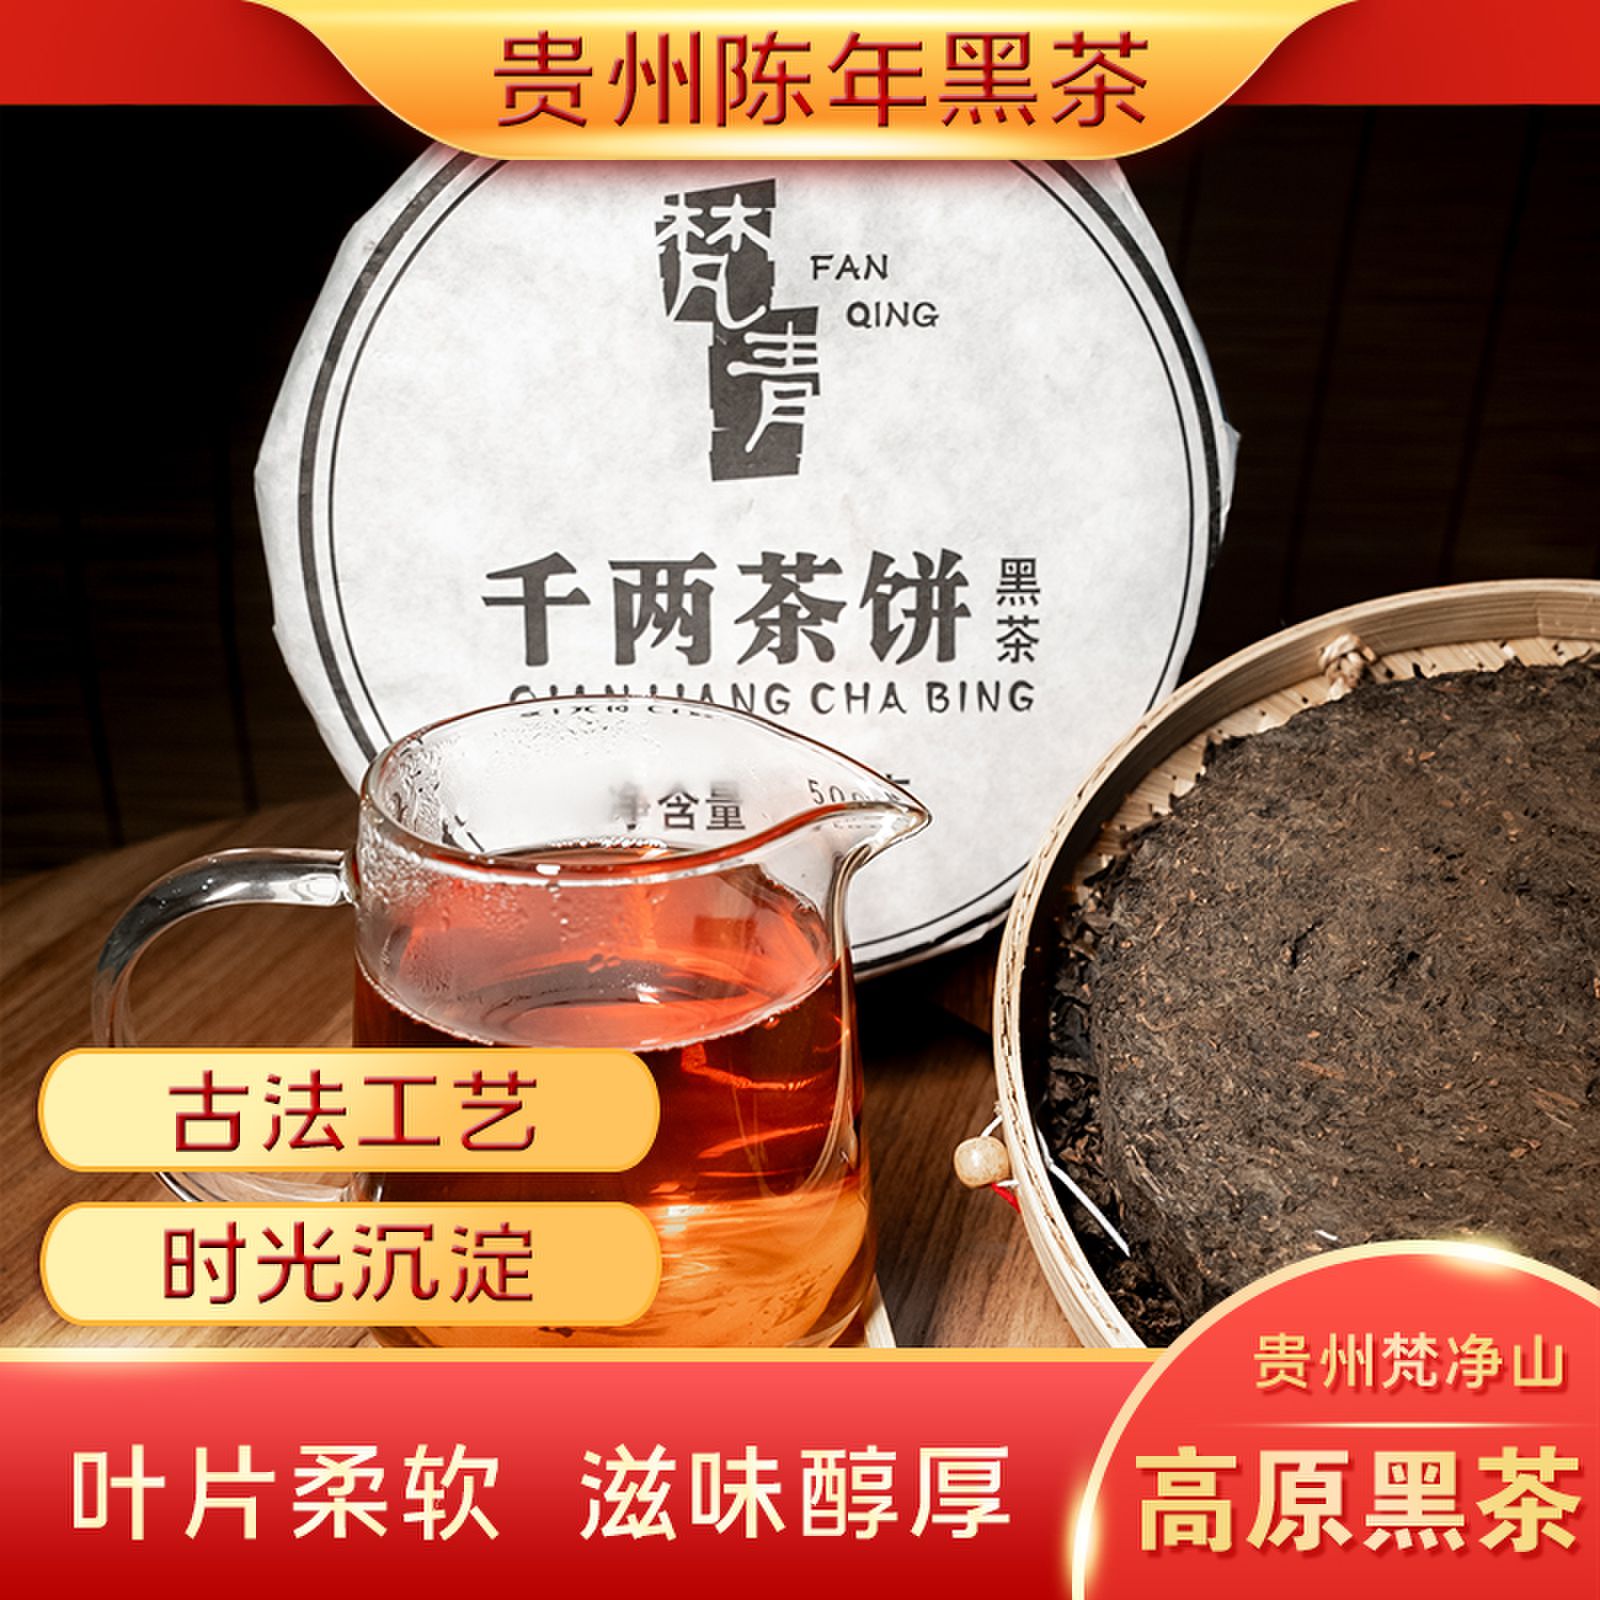 贵州梵青黑茶 千两茶饼地道陈茶净含量500g